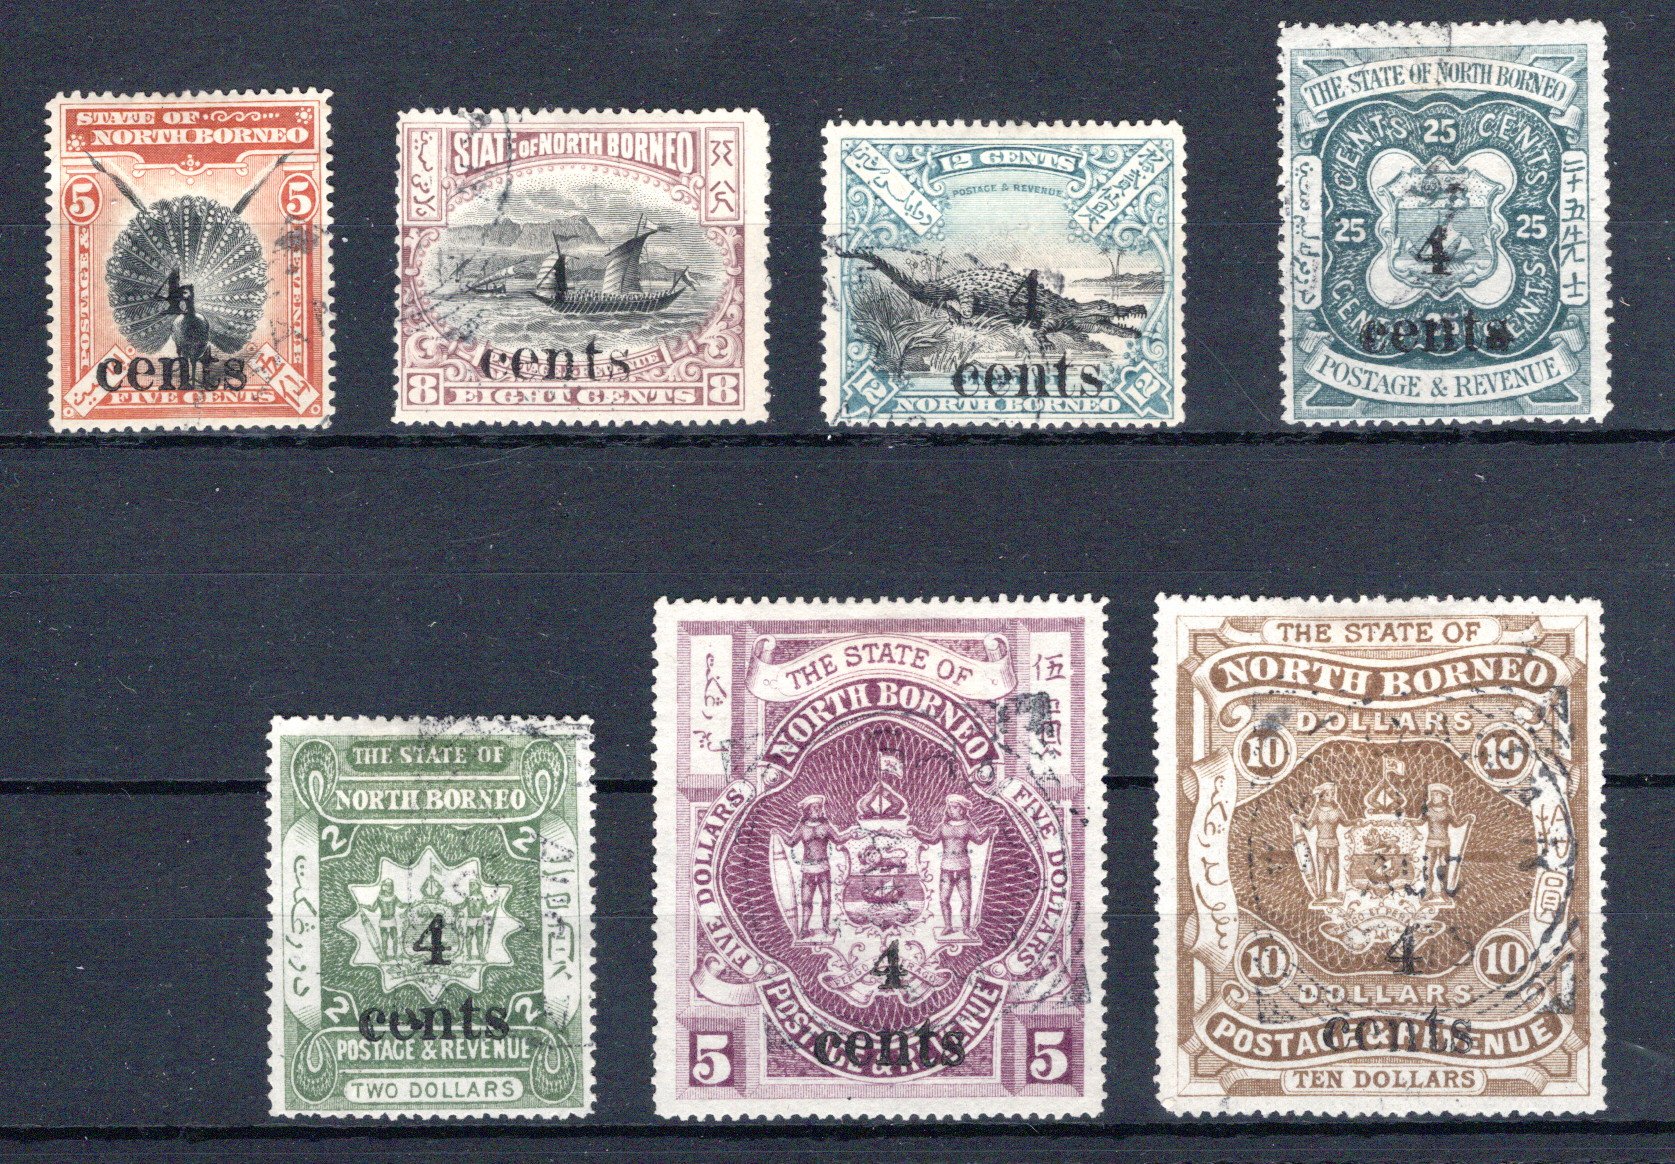 Lot 326 - British Commonwealth north borneo -  Georg Bühler Briefmarken Auktionen GmbH Georg Bühler 336 auction